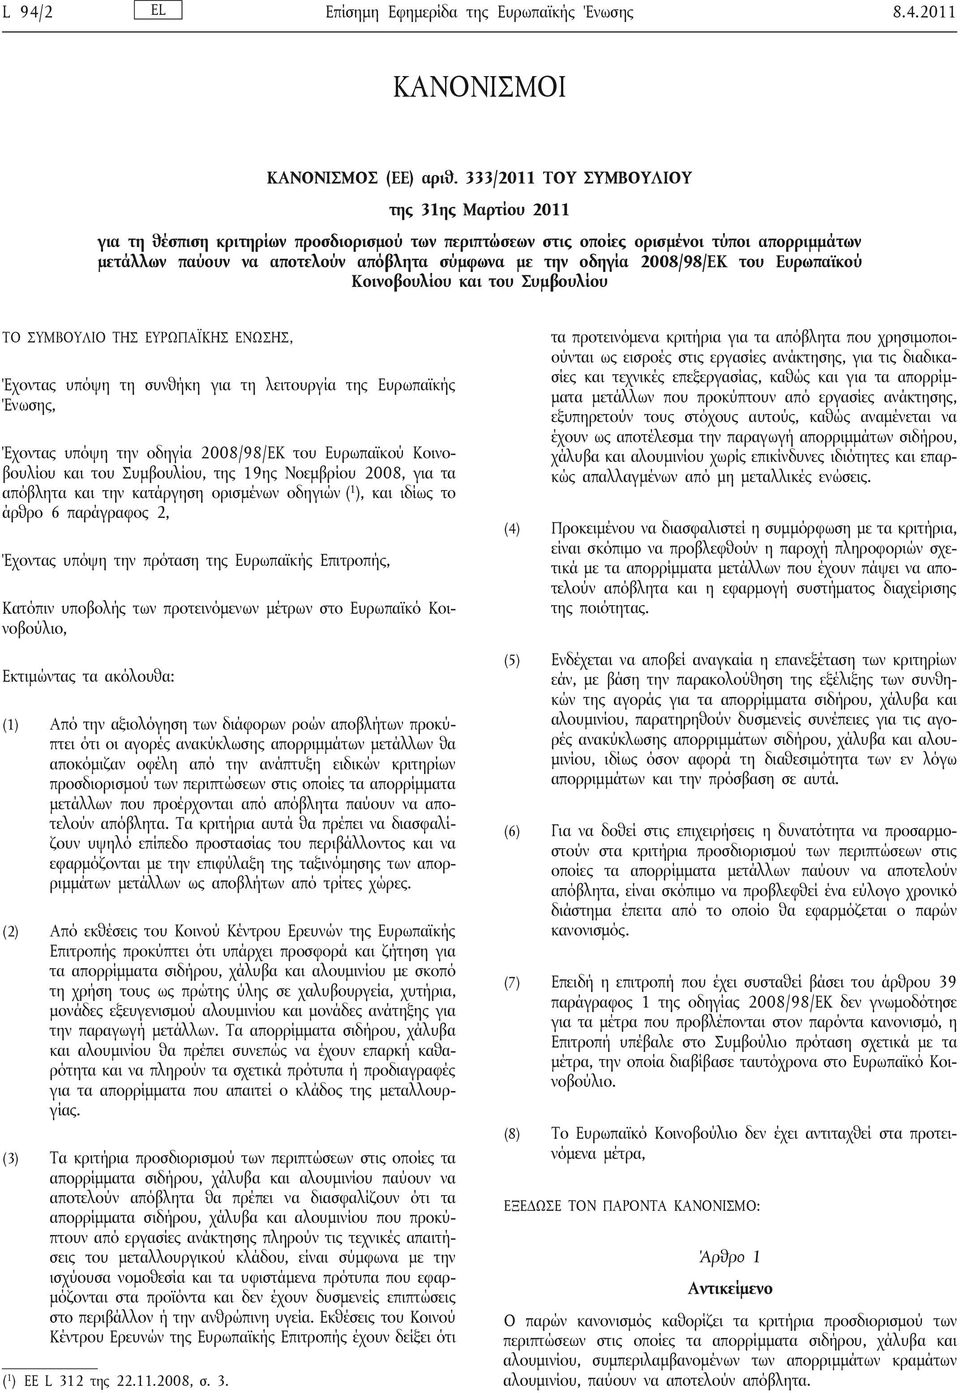 οδηγία 2008/98/ΕΚ του Ευρωπαϊκού Κοινοβουλίου και του Συμβουλίου ΤΟ ΣΥΜΒΟΥΛΙΟ ΤΗΣ ΕΥΡΩΠΑΪΚΗΣ ΕΝΩΣΗΣ, Έχοντας υπόψη τη συνθήκη για τη λειτουργία της Ευρωπαϊκής Ένωσης, Έχοντας υπόψη την οδηγία